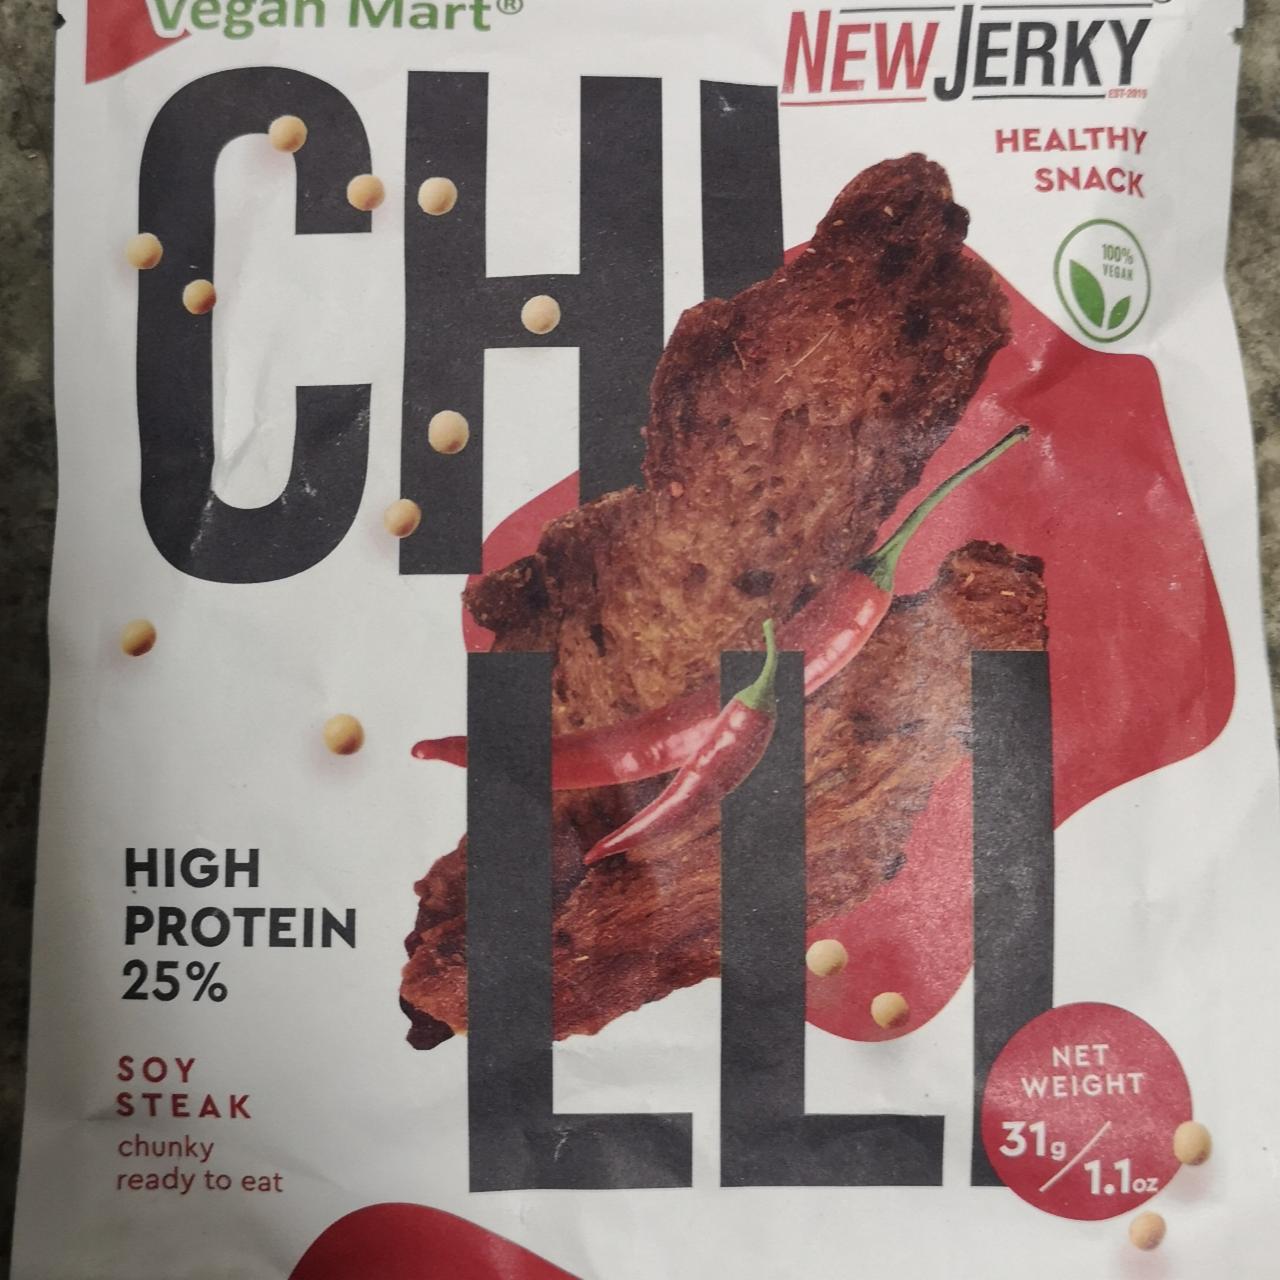 Fotografie - New Jerky Chilli Soy Steak chunky high protein 25% Vegan Mart